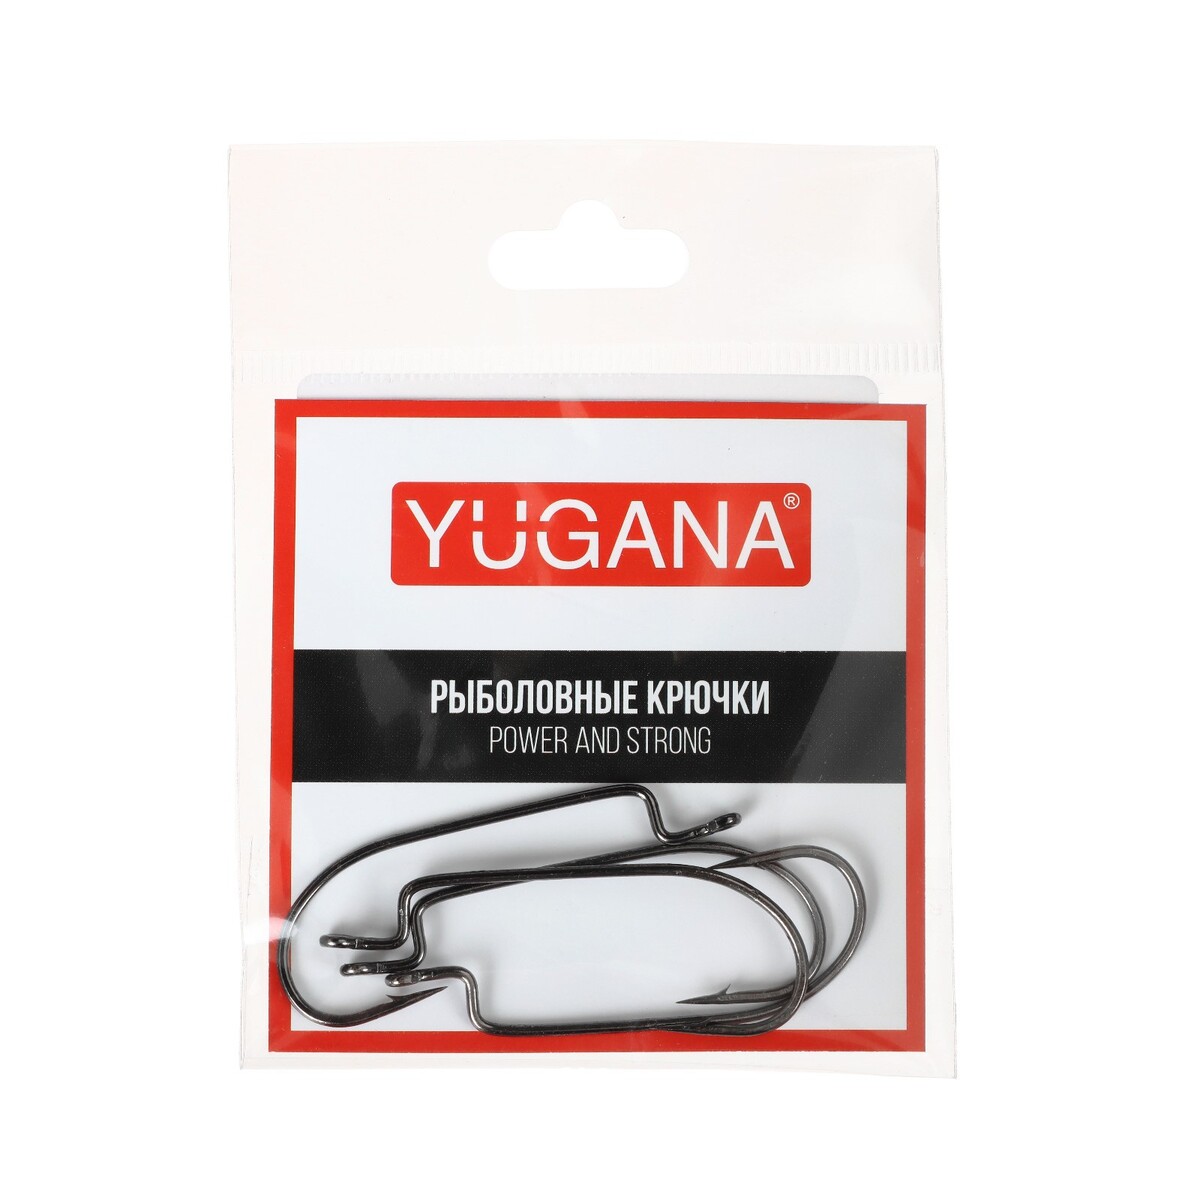   yugana o shaughnessy worm,   2/0, 4 